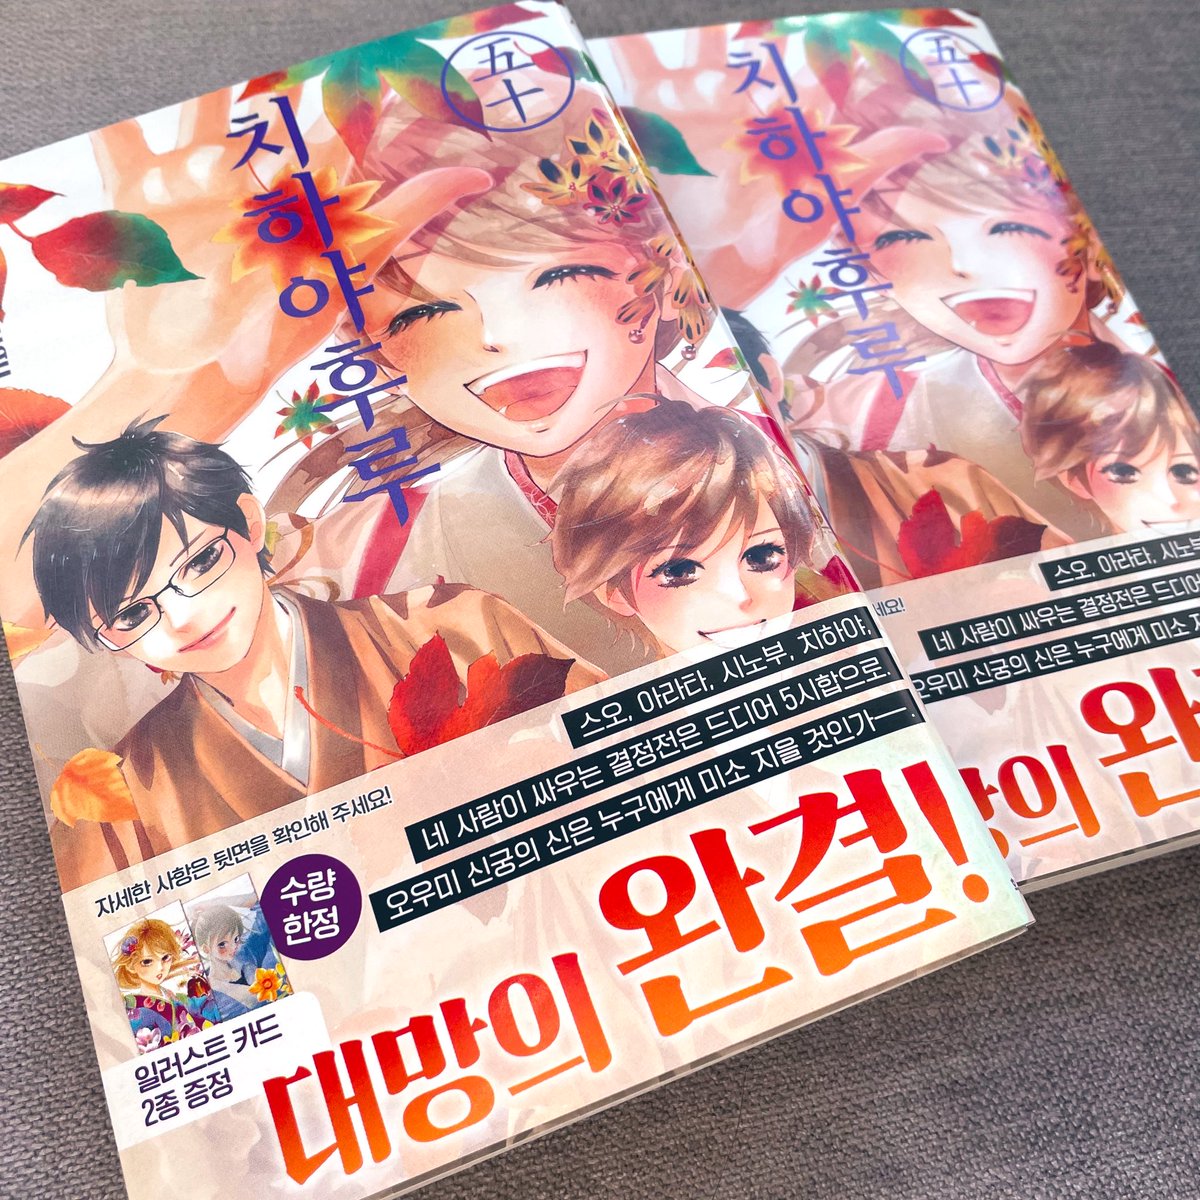 韓国語版のちはやふるも届きました!韓国語版は50巻!最終巻まで紙で出してもらえてとても嬉しいです。読んでくださる韓国の皆さんに感謝!どうかラストまで楽しんでもらえますように。
おまけのカードもプレゼントでついています🇰🇷❤️

한국어판의 치하야 후루도 도착했습니다! 한국어판은 50권!… 